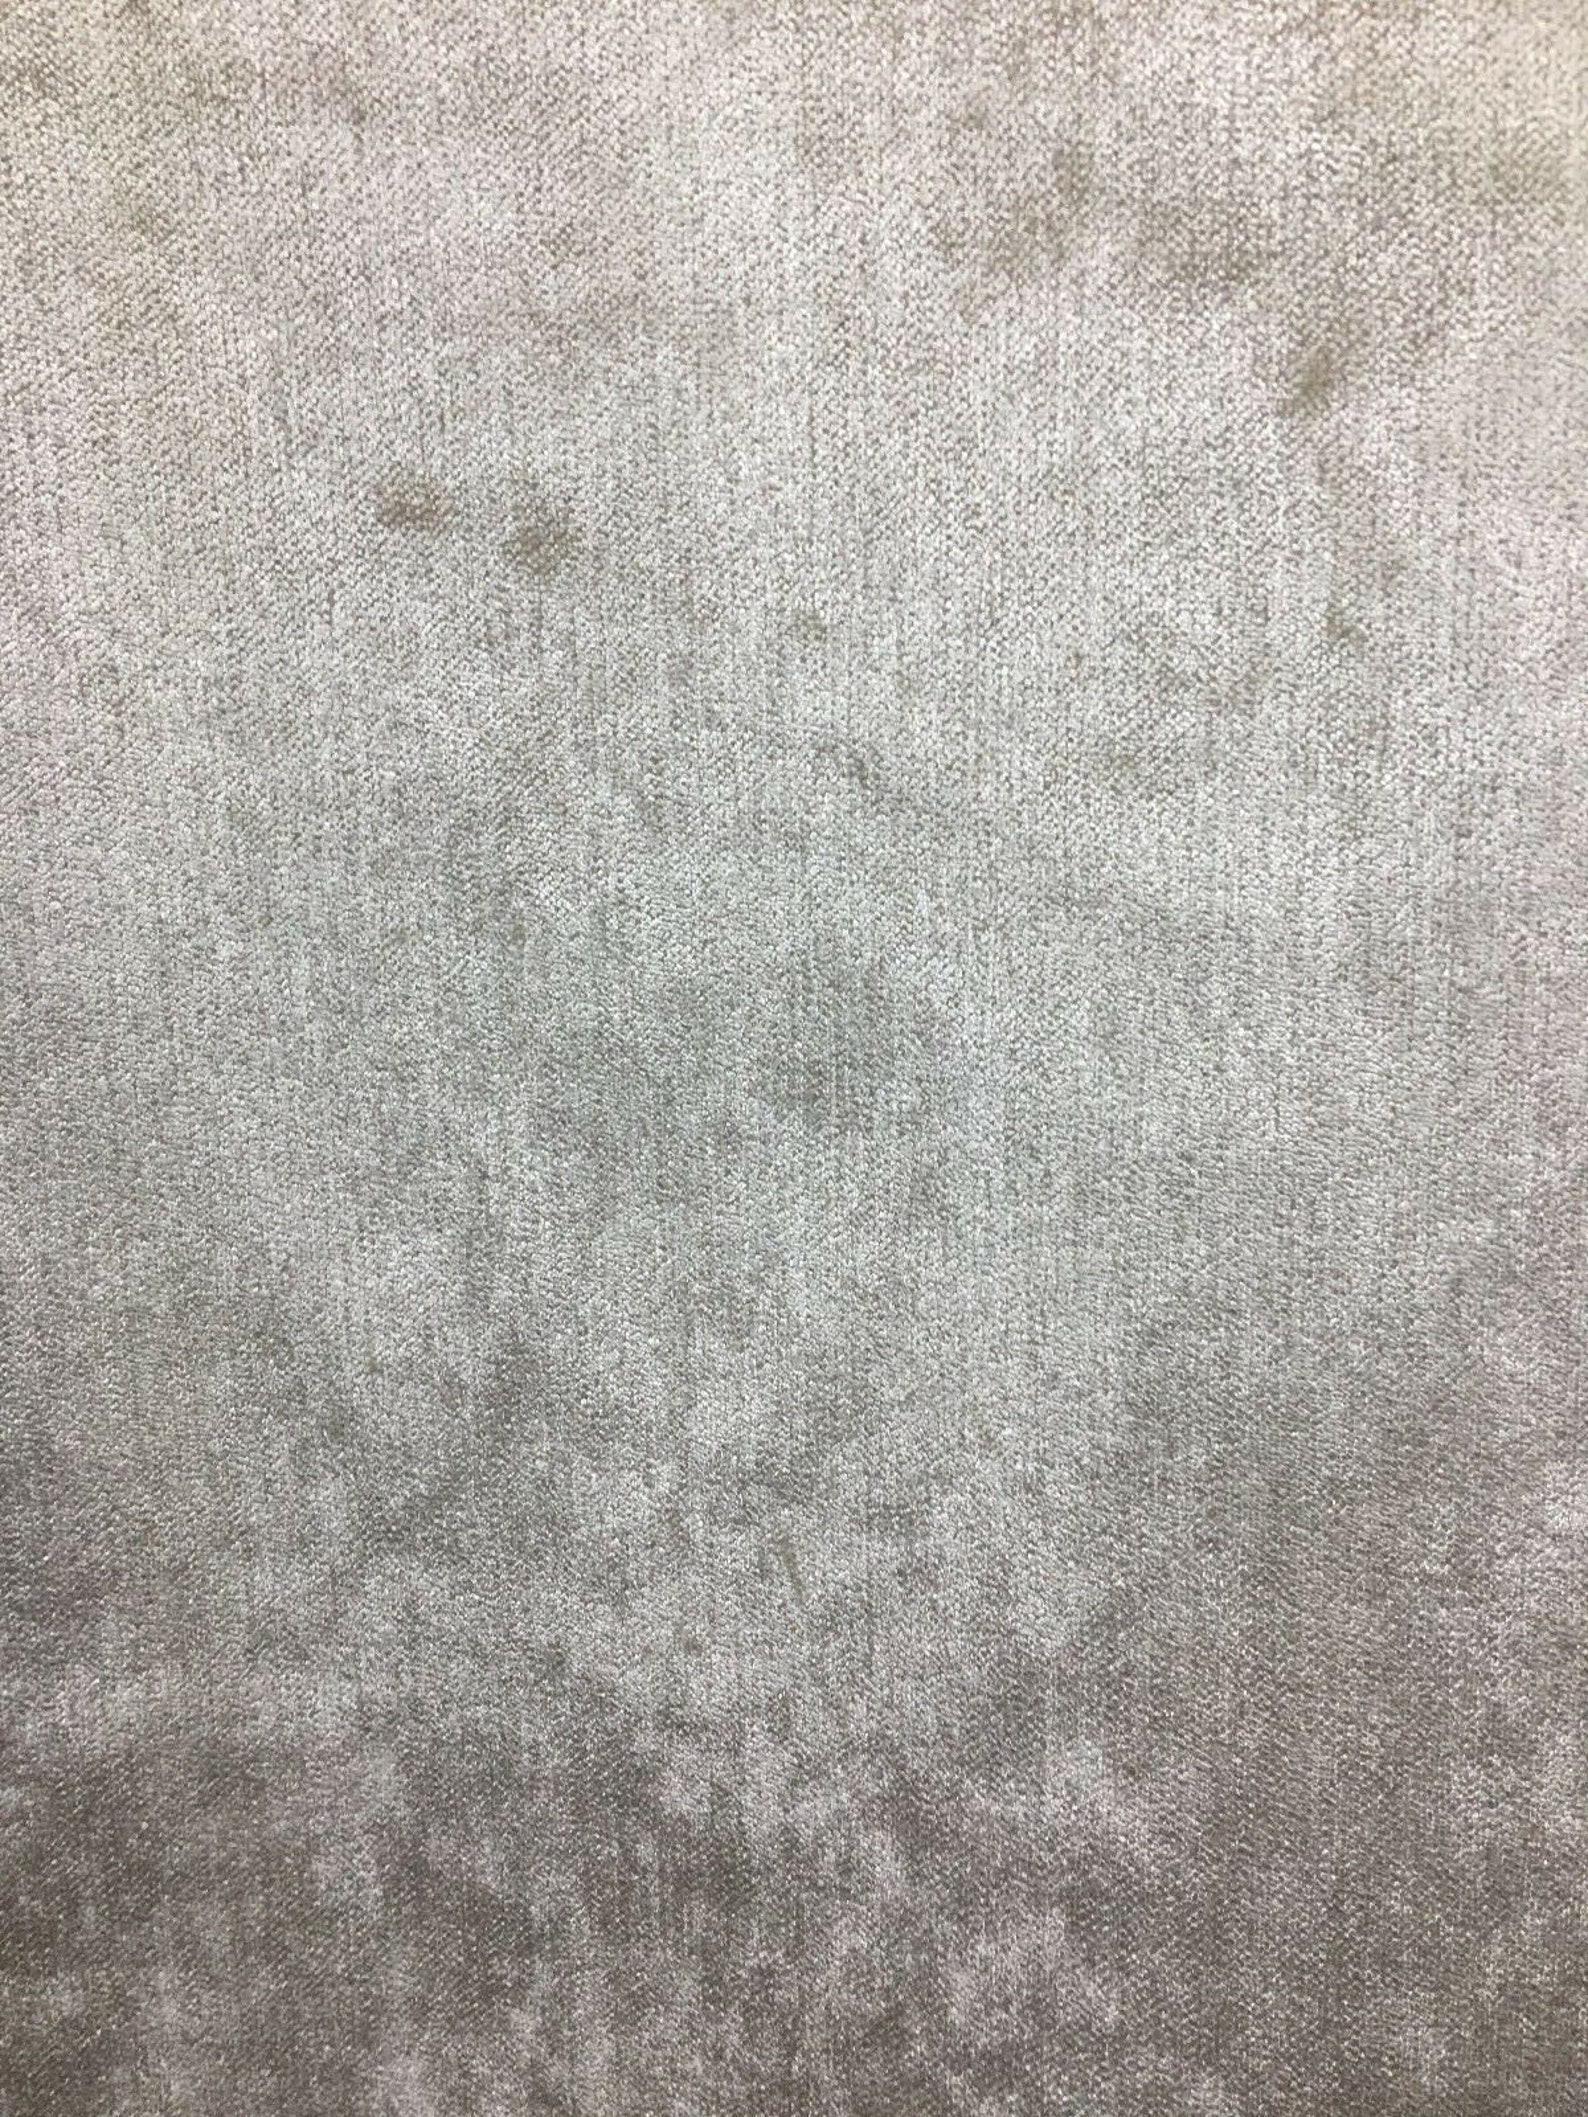 IVORY Solid Chenille Velvet Upholstery Drapery Fabric 56 In. - Etsy